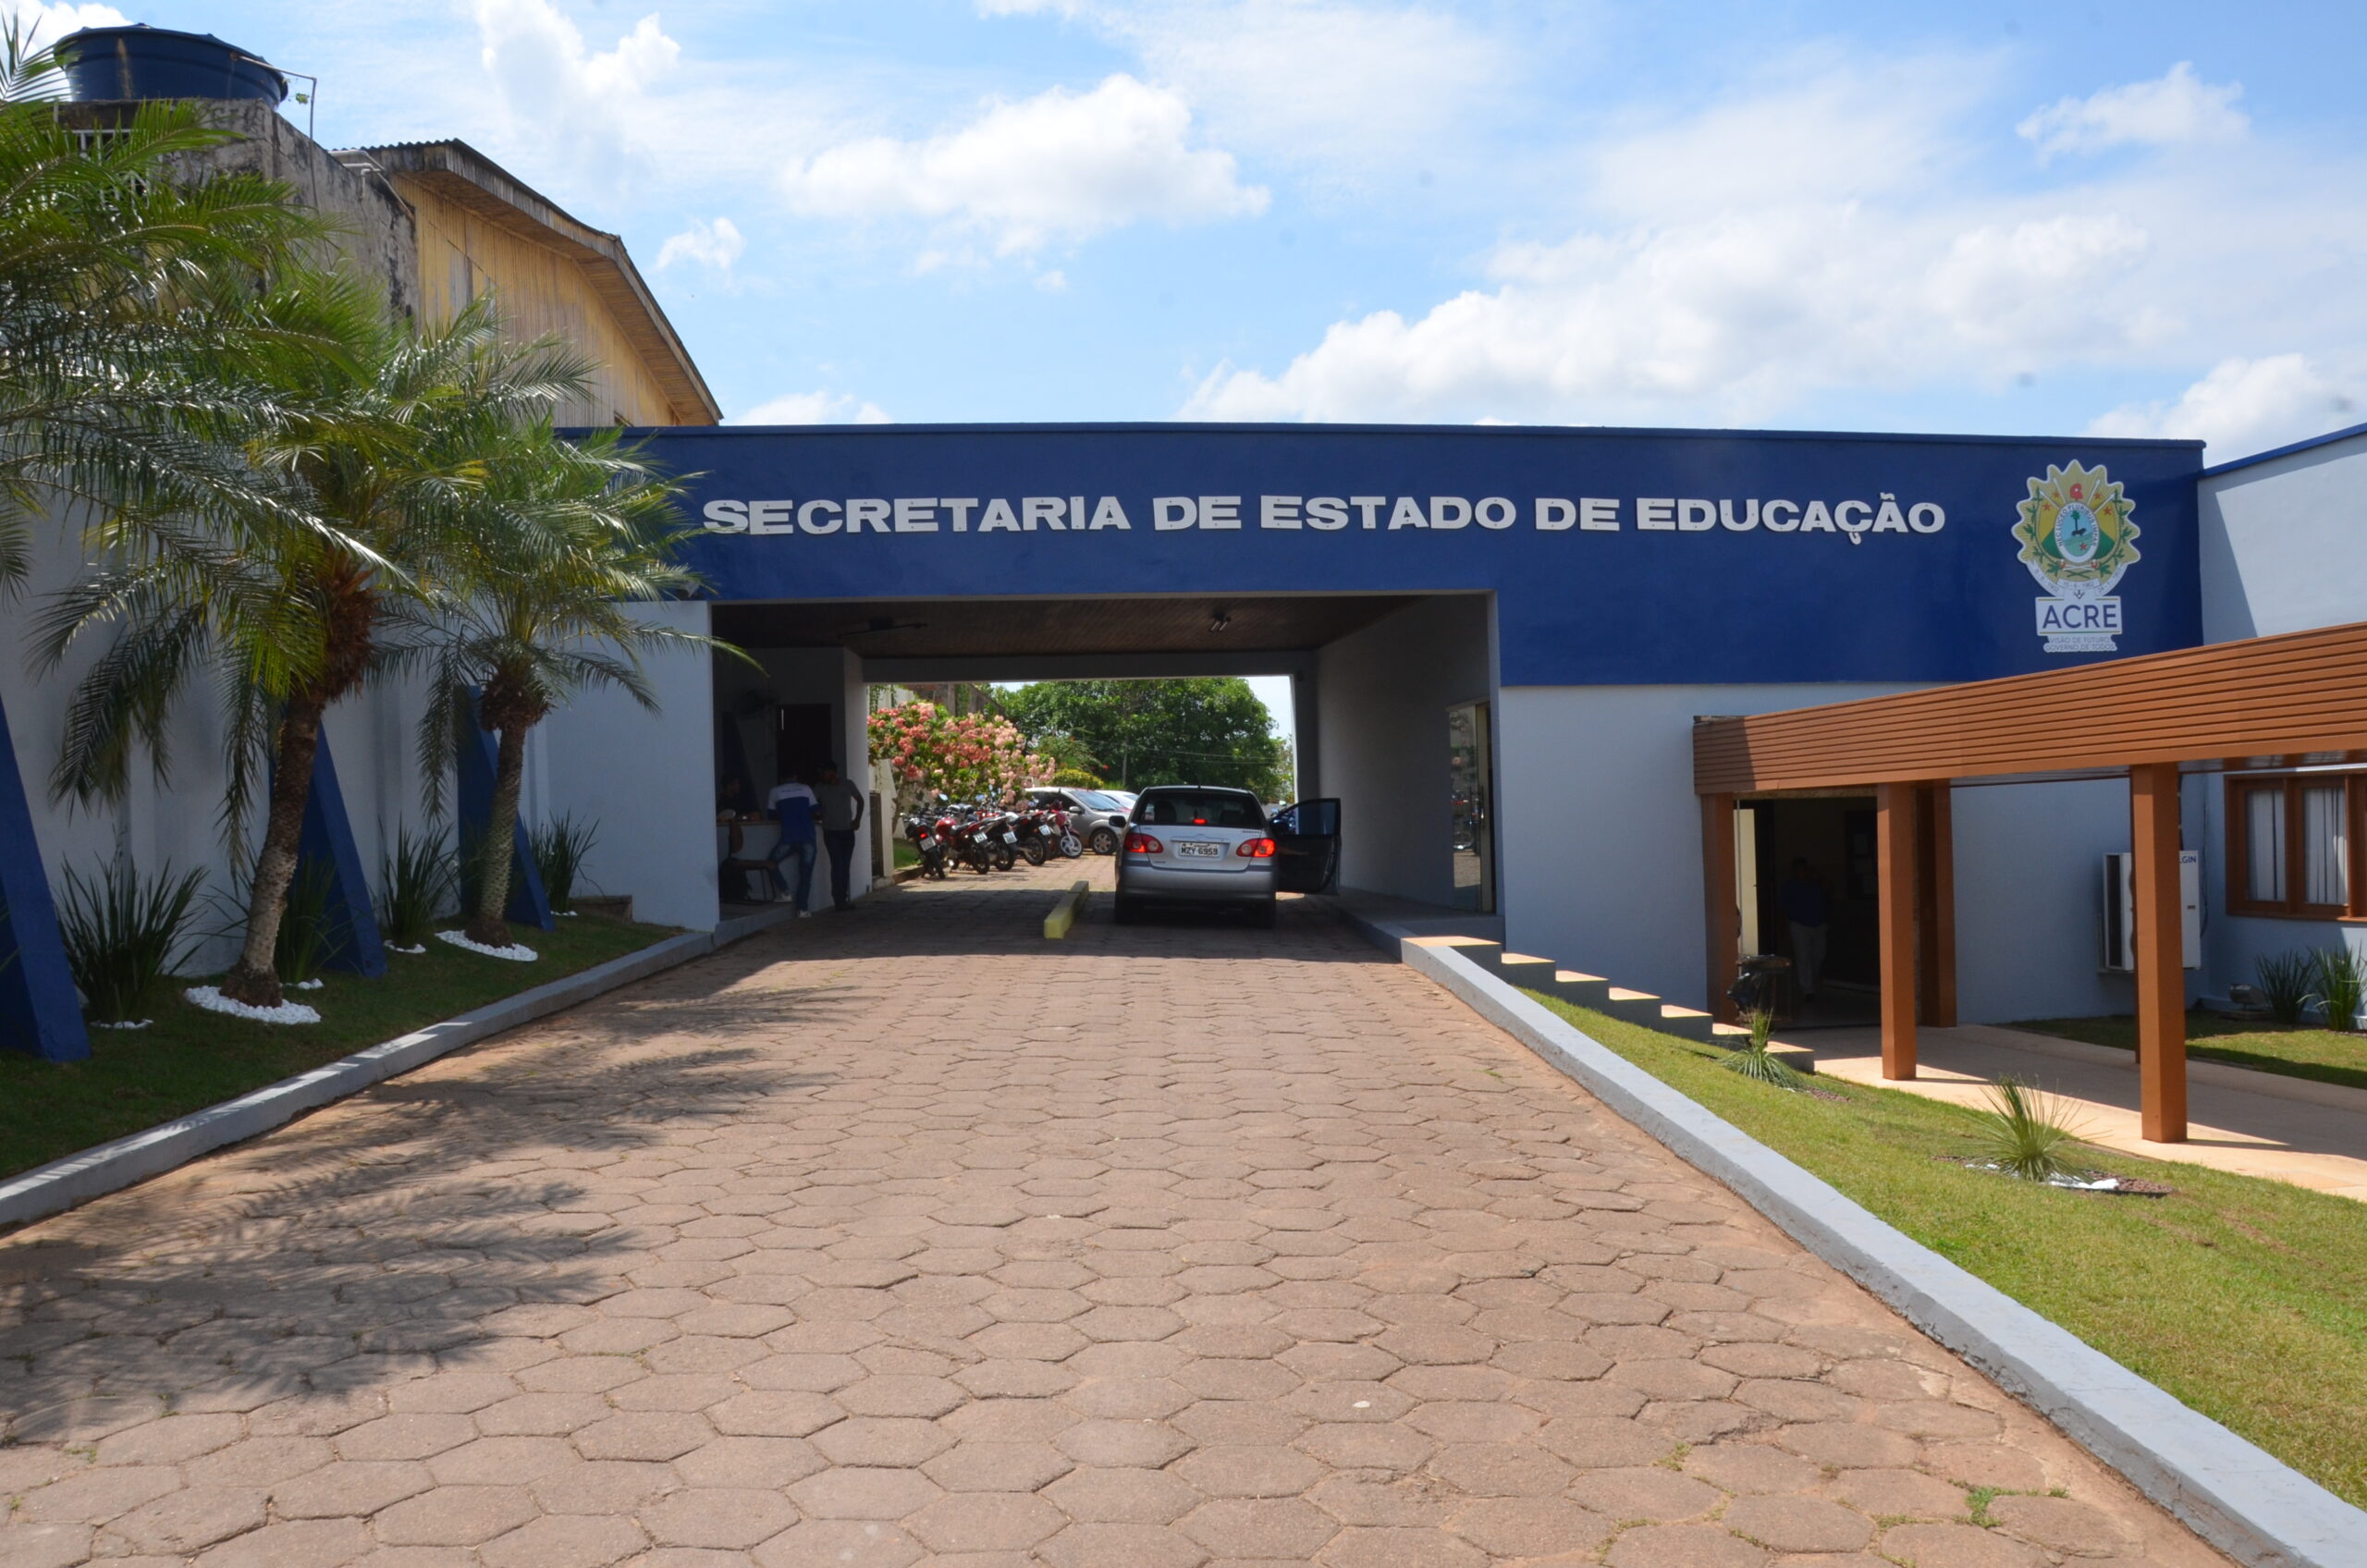 Educação do Acre e Universidade Federal do Amazonas prorrogam prazos de inscrição de processo seletivo